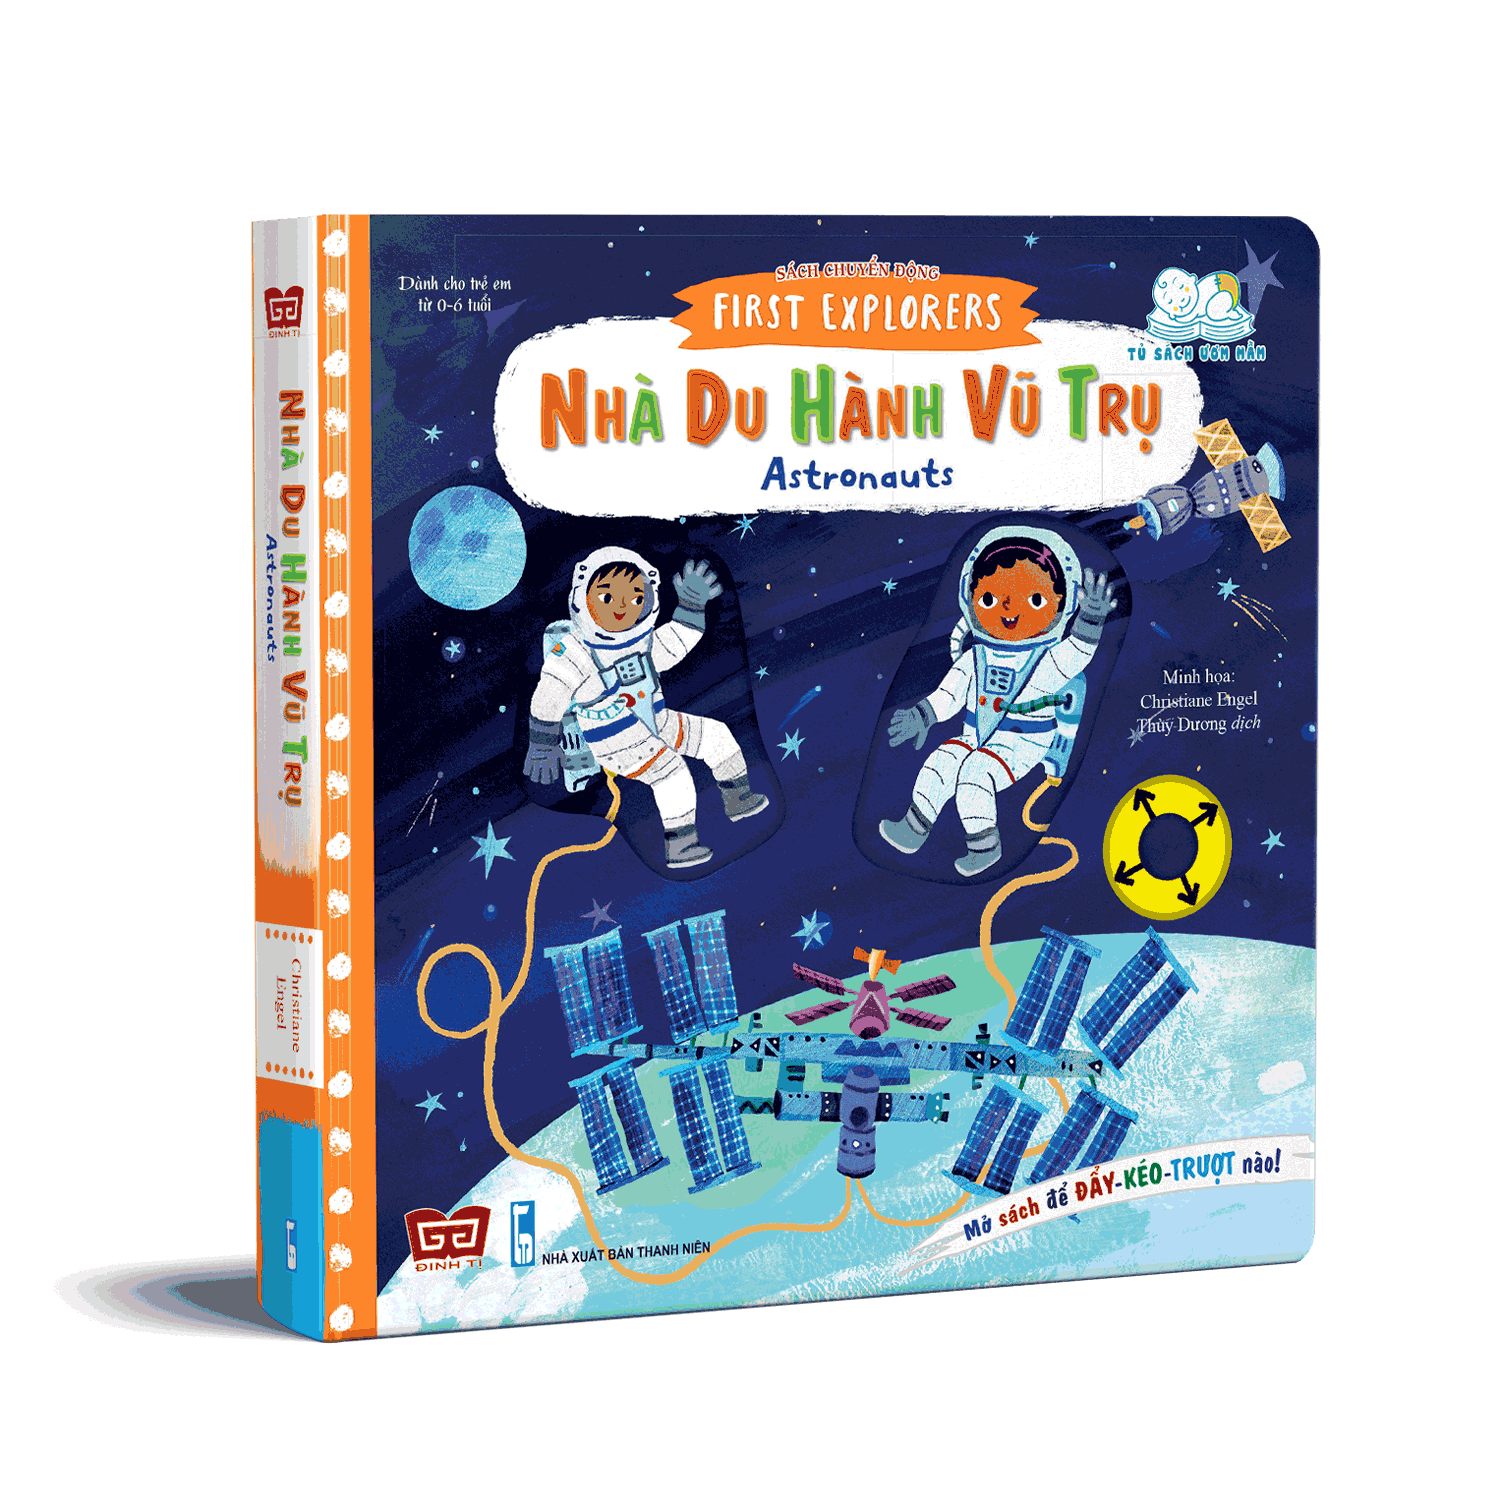 Sách Chuyển Động - First Explorers - Astronauts - Nhà Du Hành Vũ Trụ